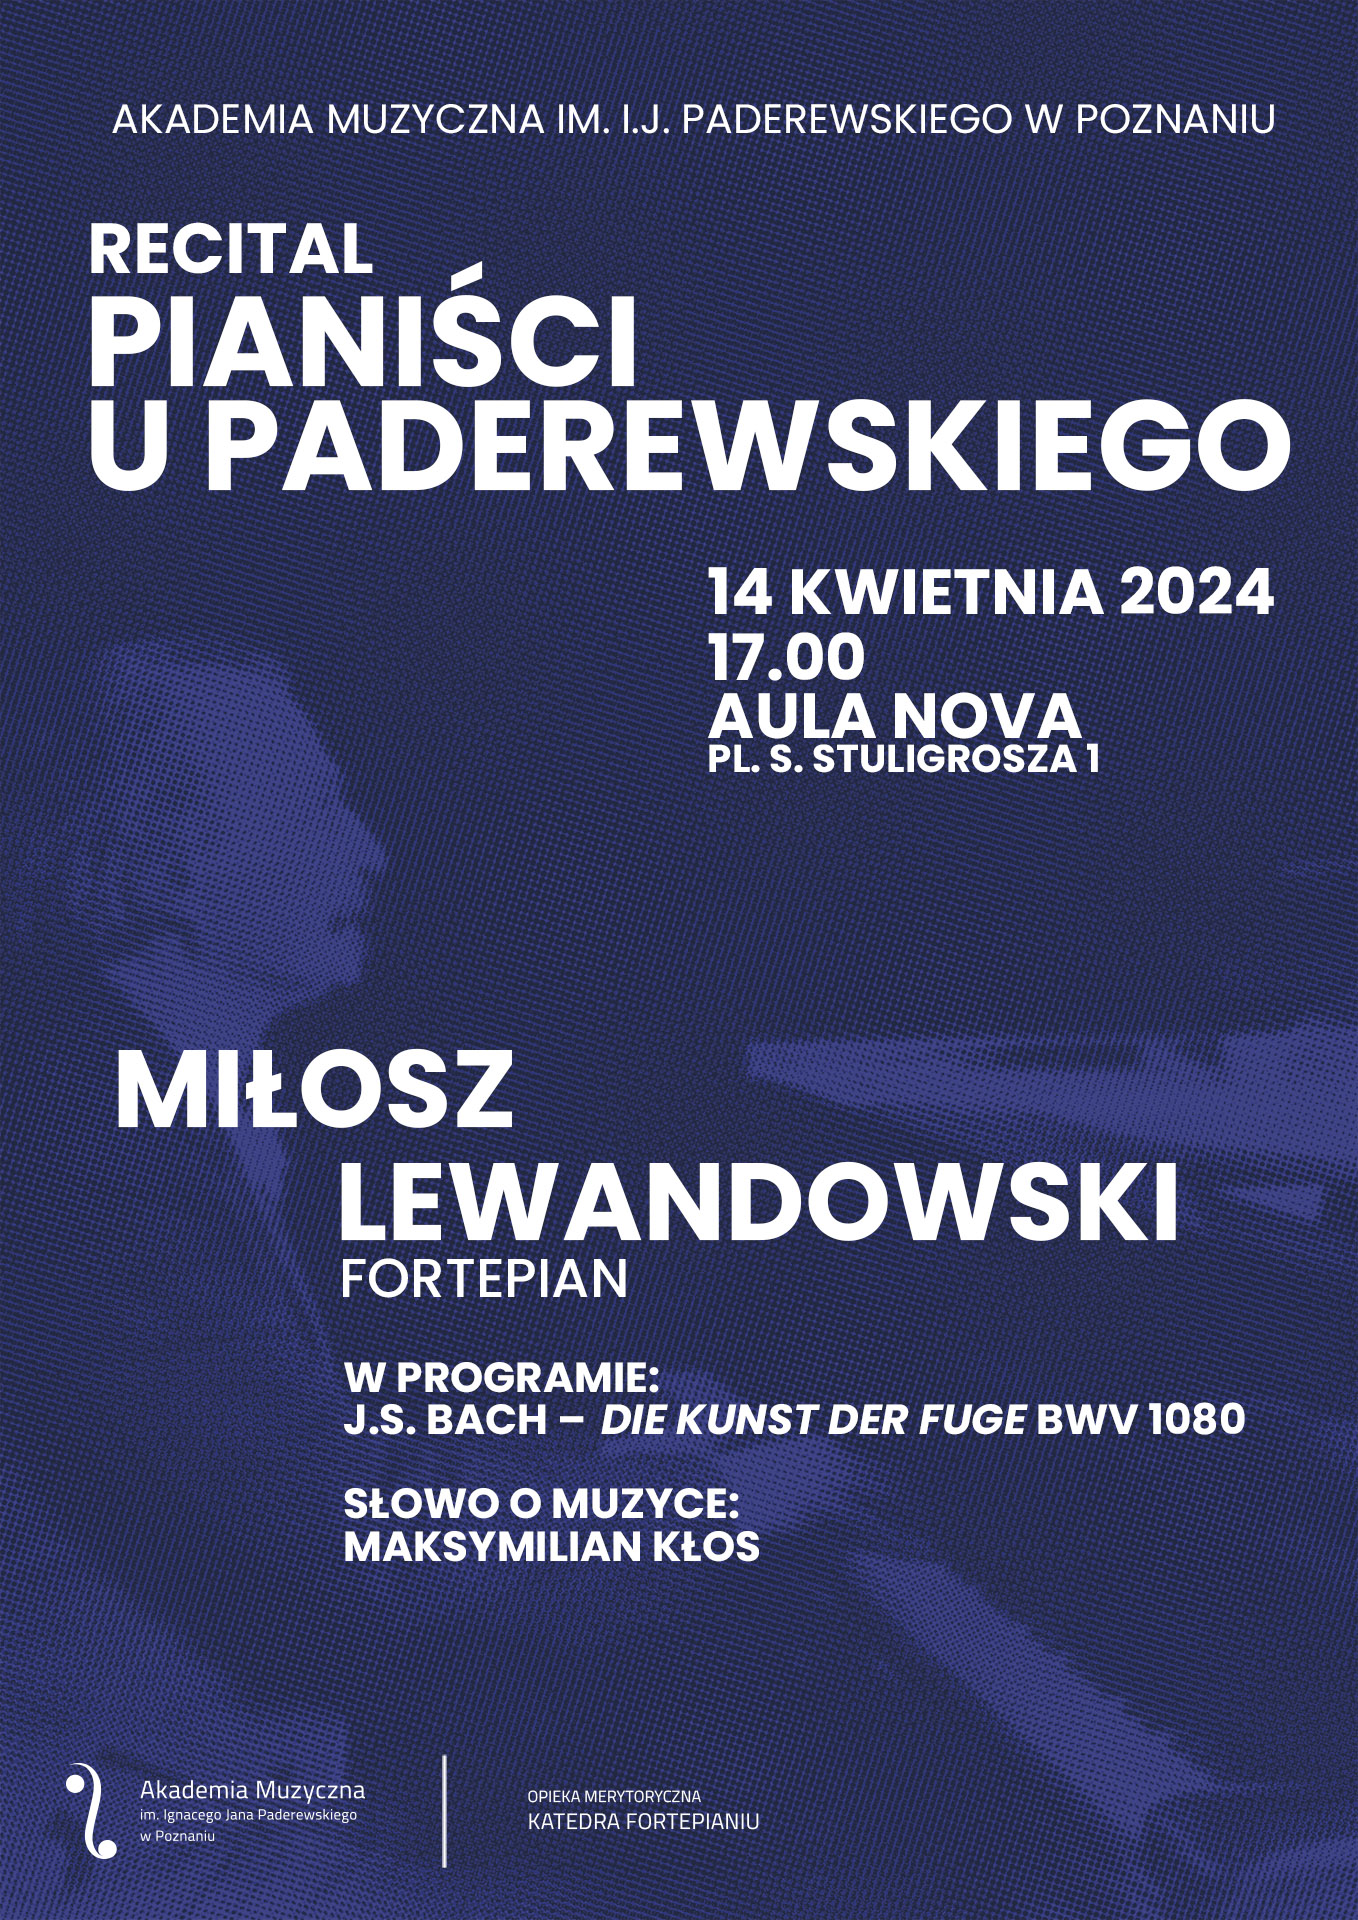 Afisz zawiera informacje na temat recitalu pianisty Miłosza Lewandowskiego w ramach cyklu Pianiści u Paderewskiego w dniu 14 kwietnia 2024